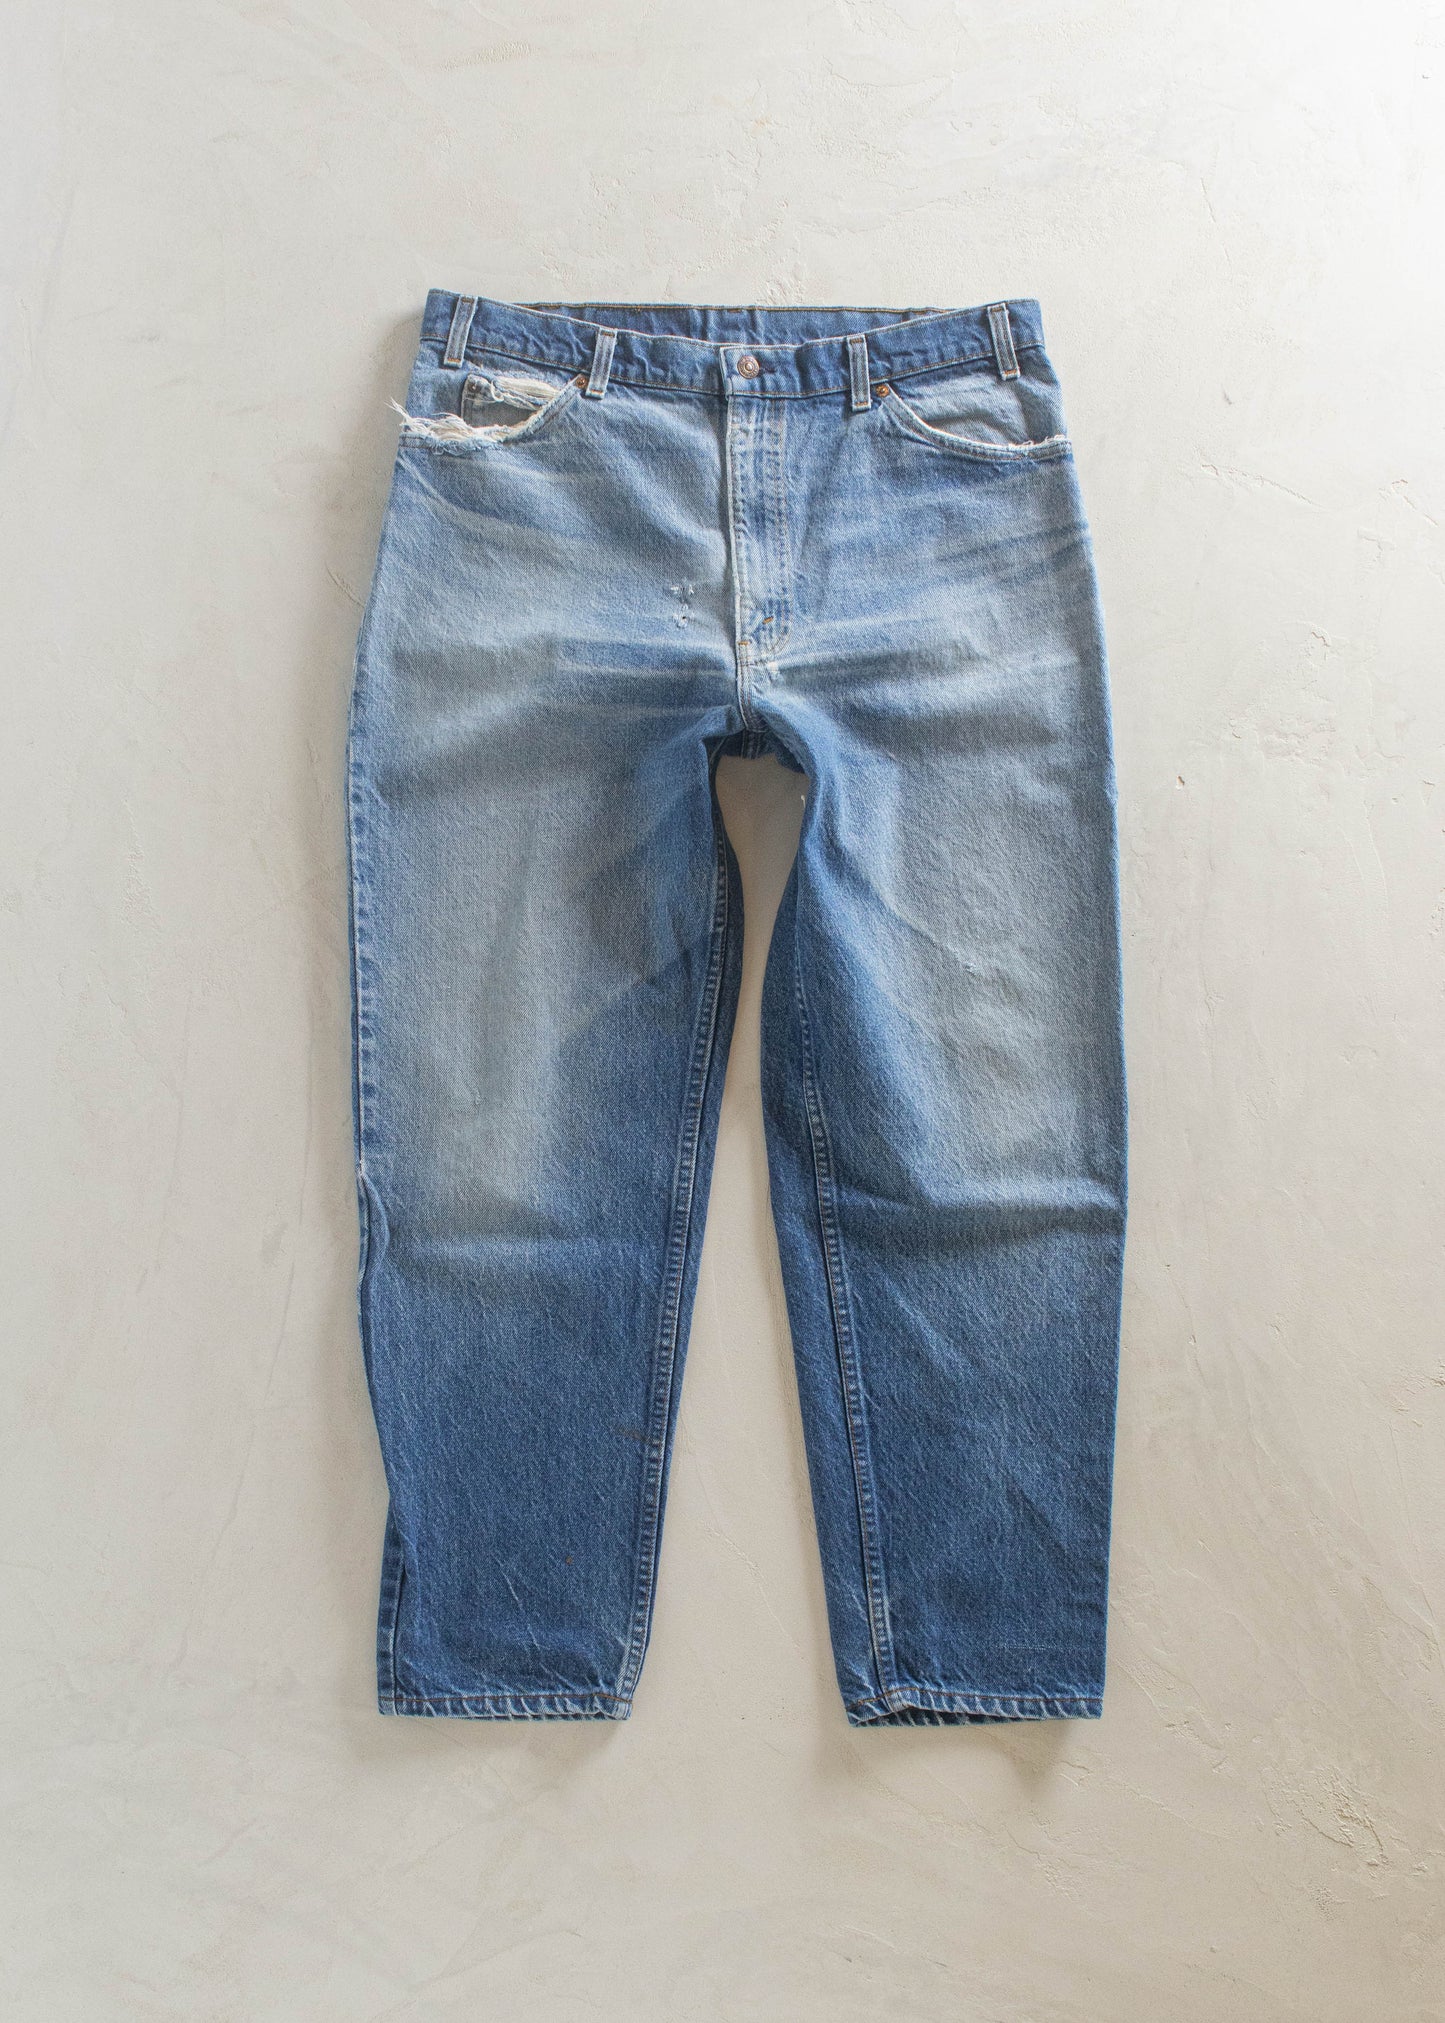 1980s Levi's 550 Orange Tab Midwash Jeans Size Women's 33 Men's 36